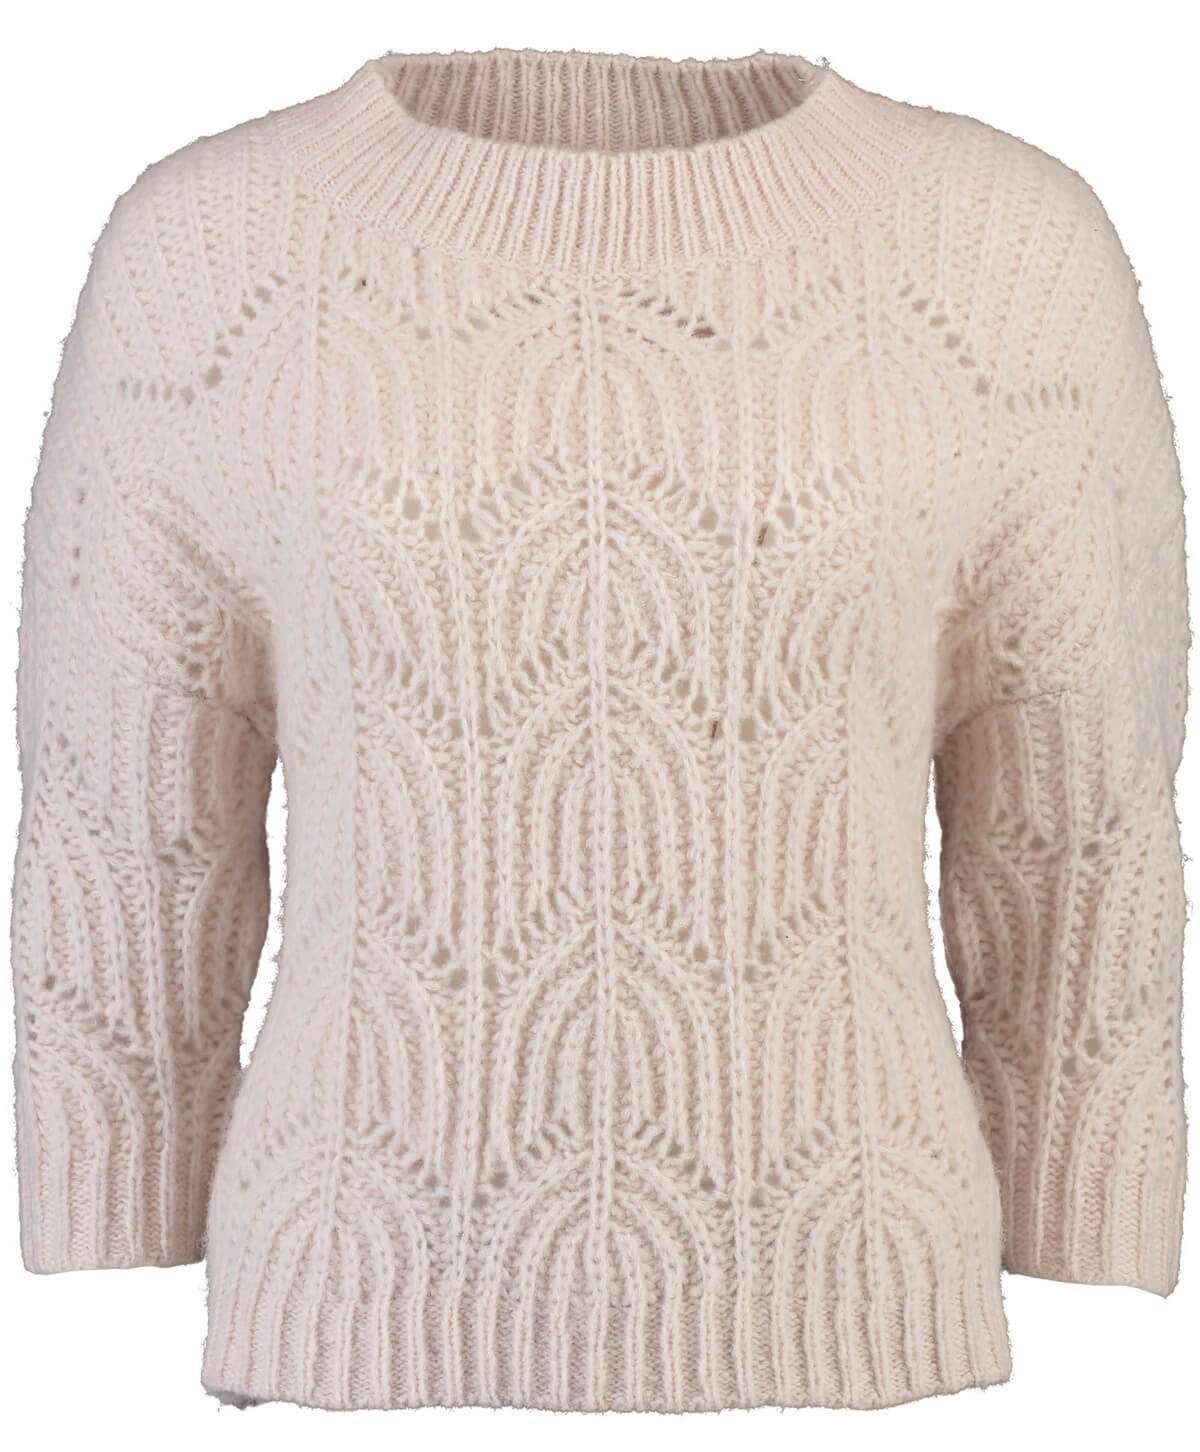 Вязаный свитер-пуловер Lesley из марципана очень мягкой вязки ажурной вязки.